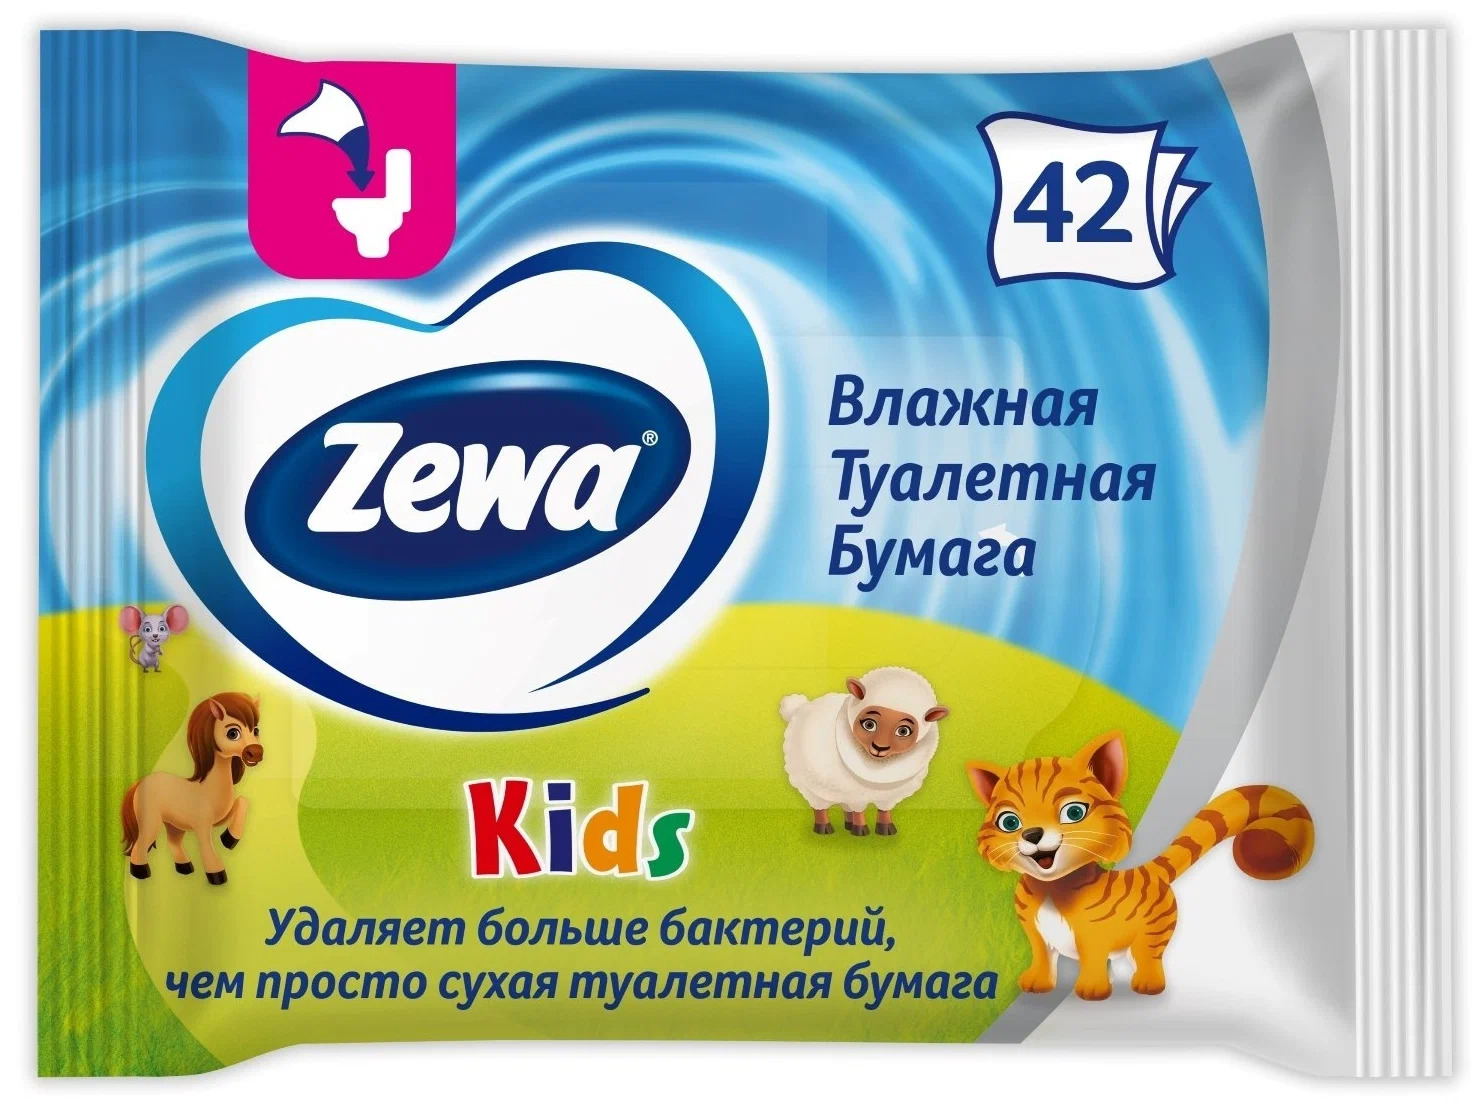 Бумага туалетная влажная Zewa Kids, 42 шт. влажная туалетная бумага солнце и луна для детей 72 шт